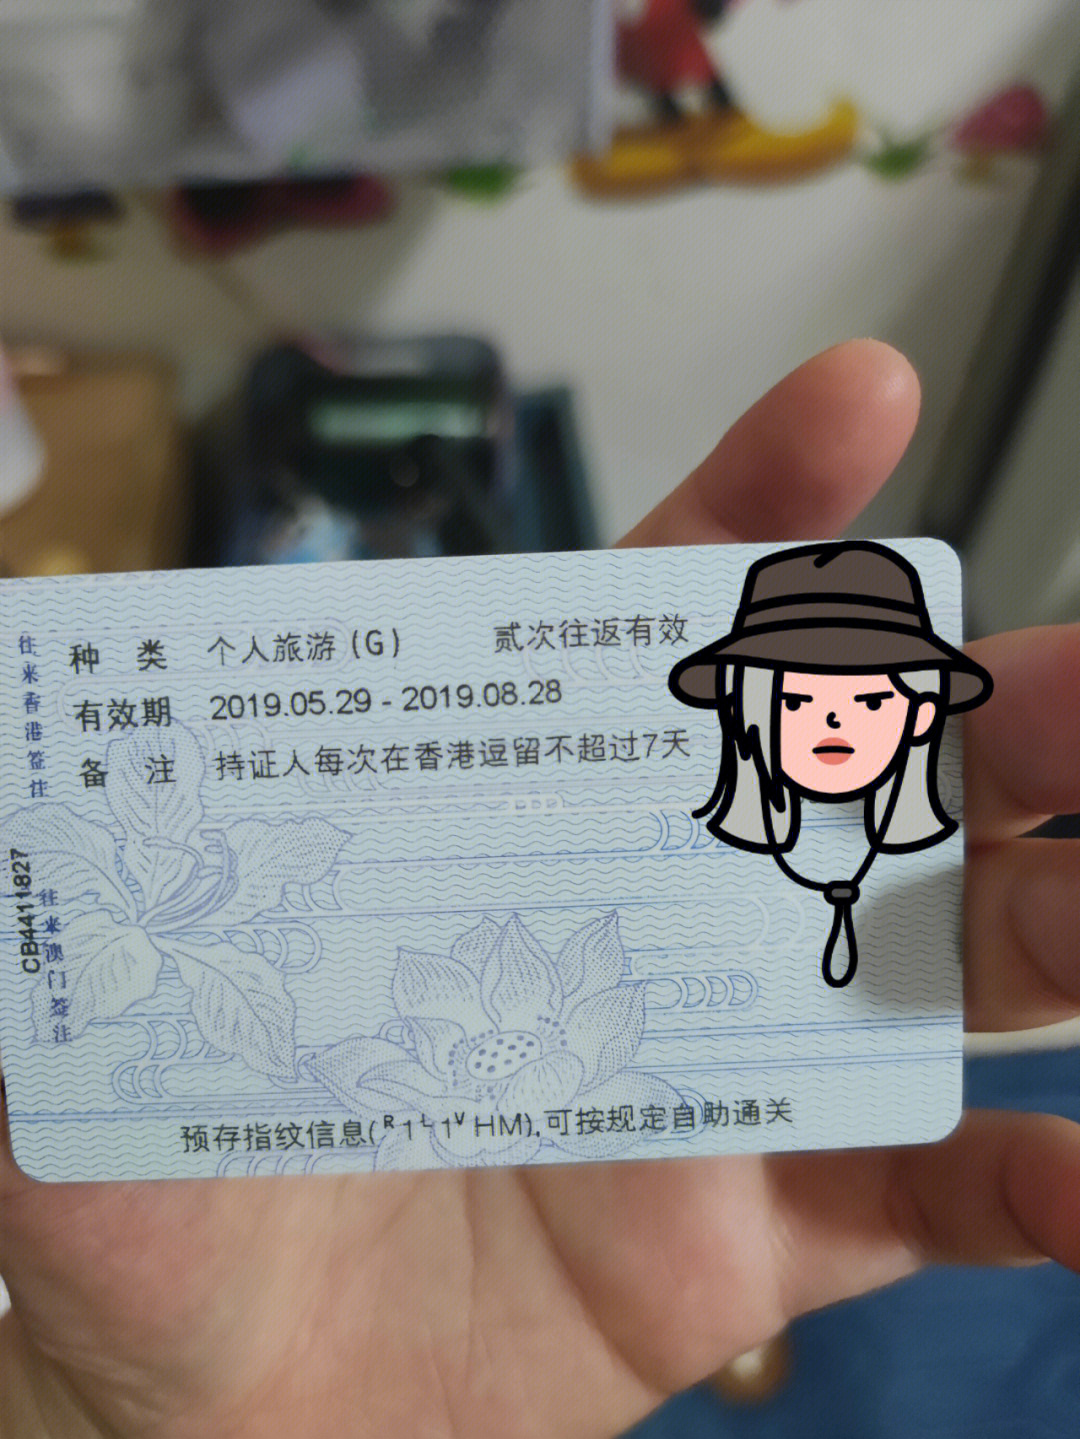 拖了三年了,去年去了上海和北京～今年想游香港和澳门,不知道这个证件